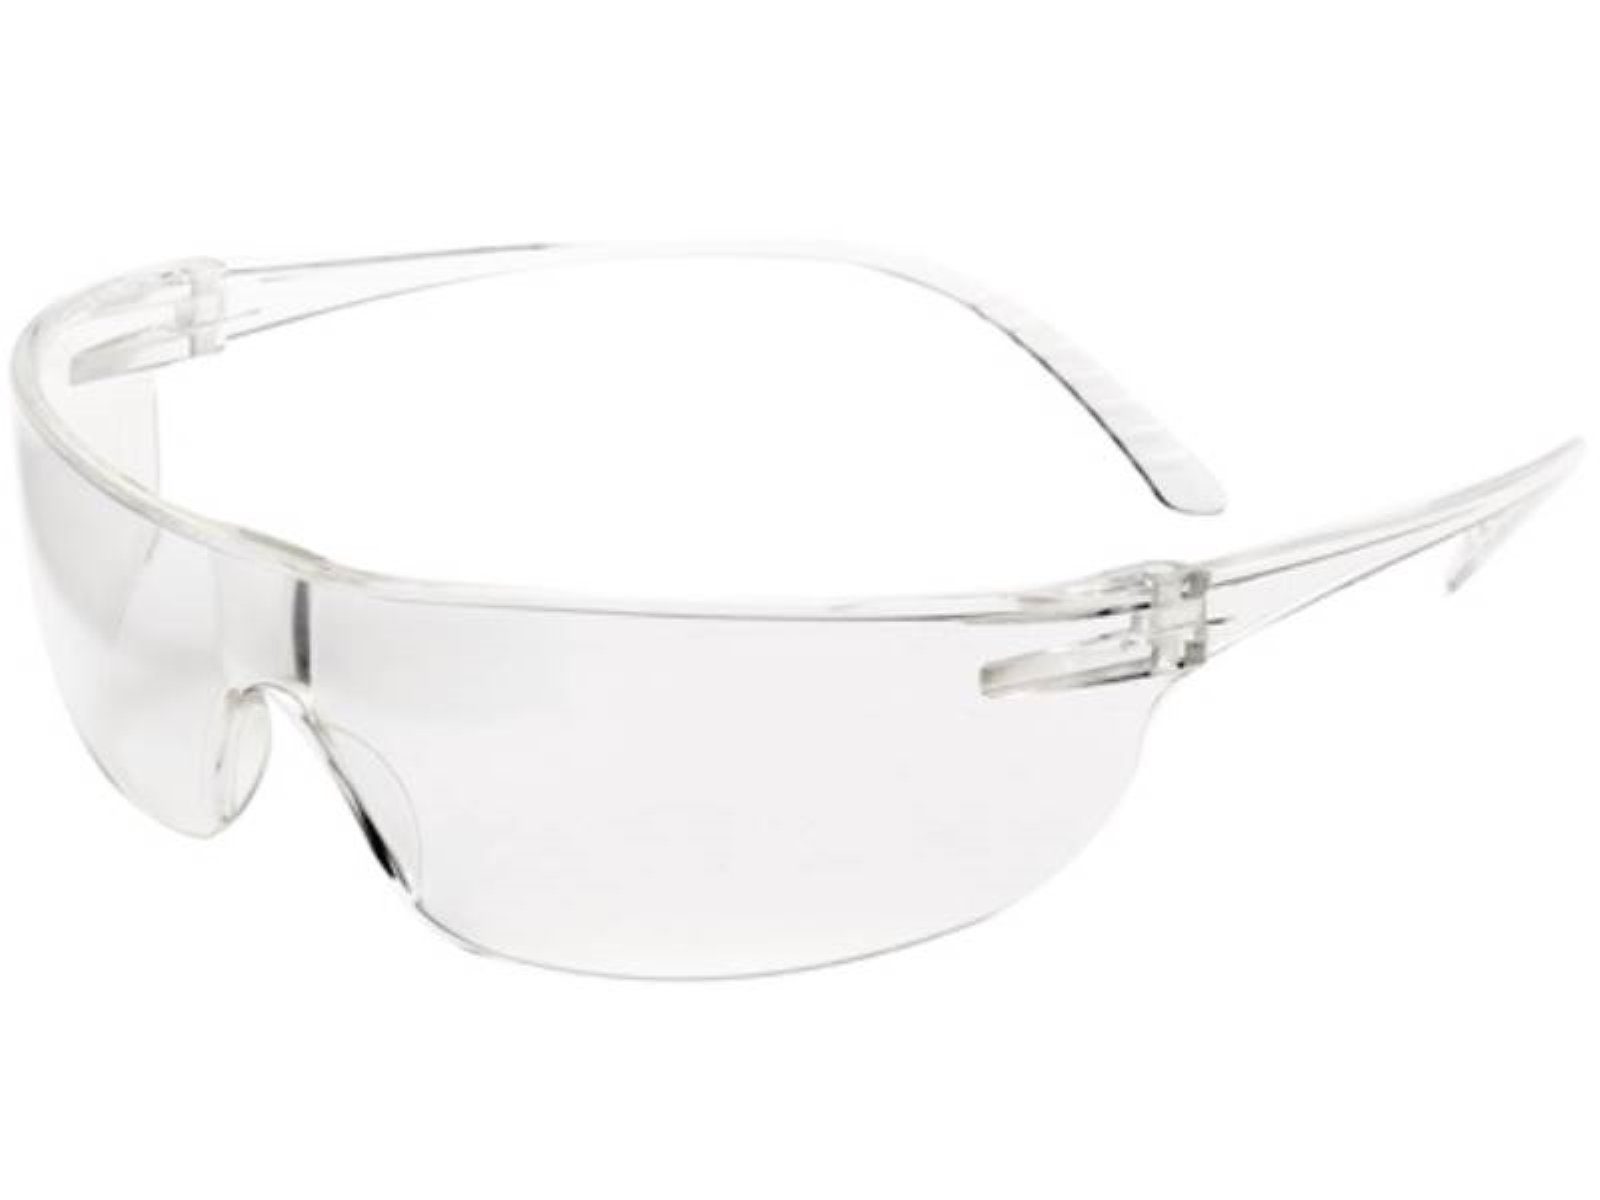 Honeywell Arbeitsschutzbrille Schutzbrille SVP-200 EN 166 Bügel klar,Scheibe klar PC HONEYWELL EN16